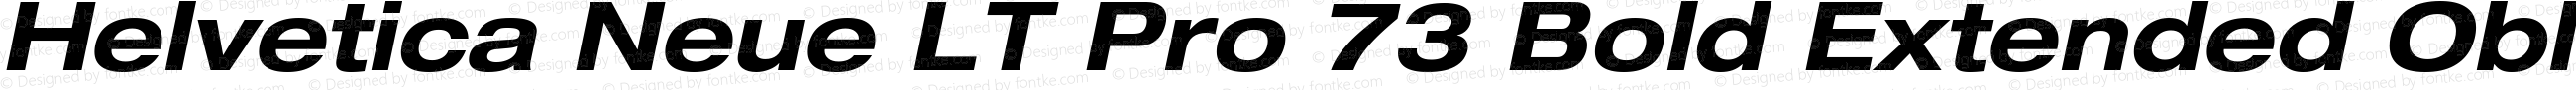 HelveticaNeueLT Pro 53 Ex Bold Italic